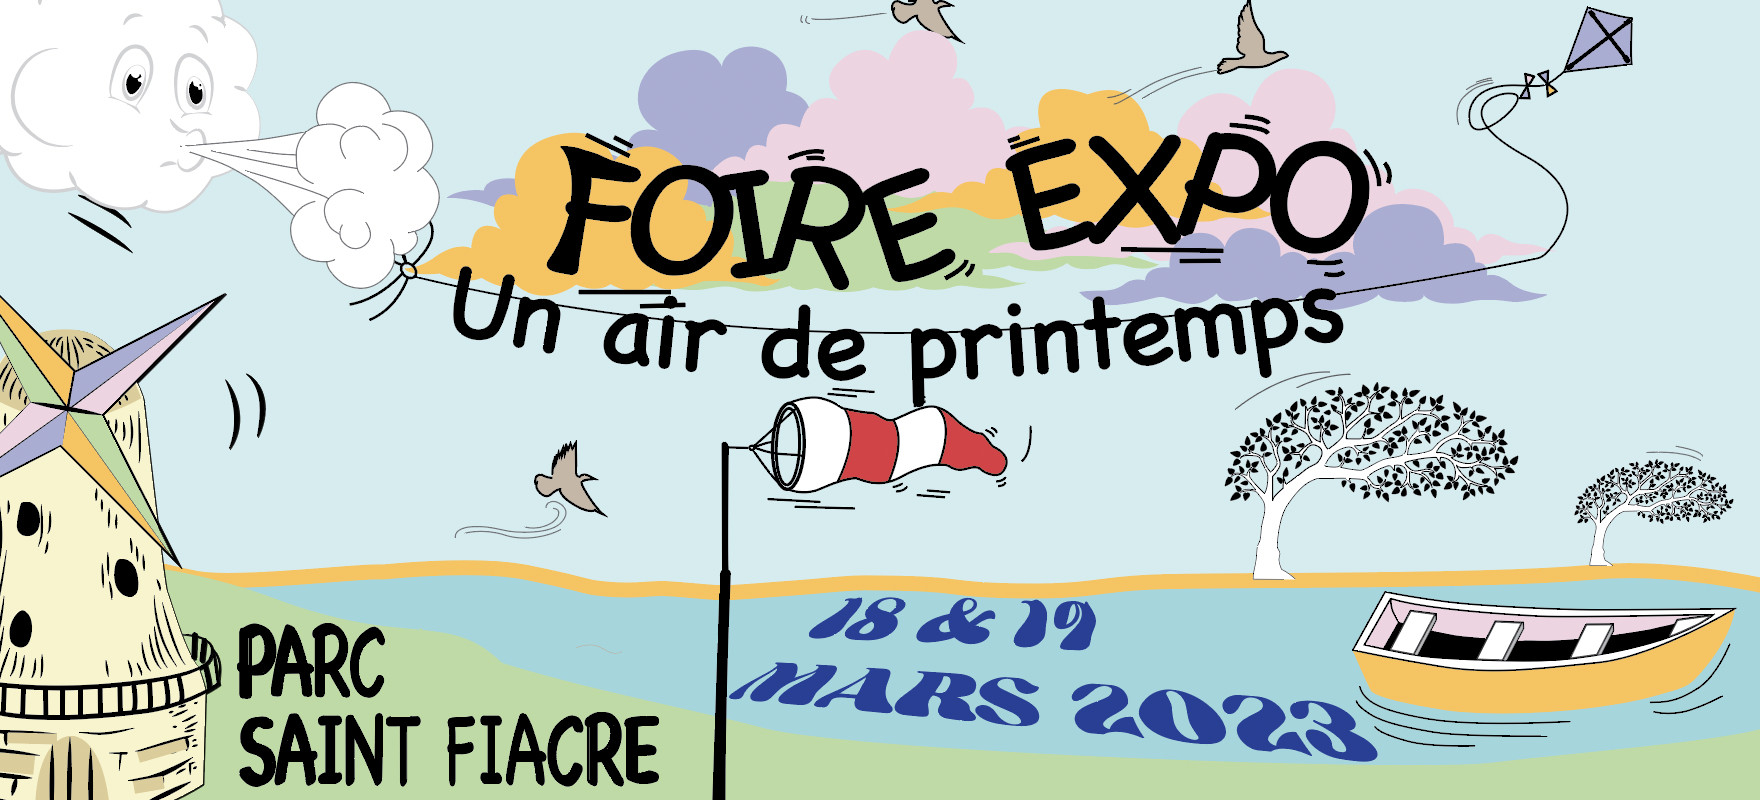 Affiche foire expo Château-gontier